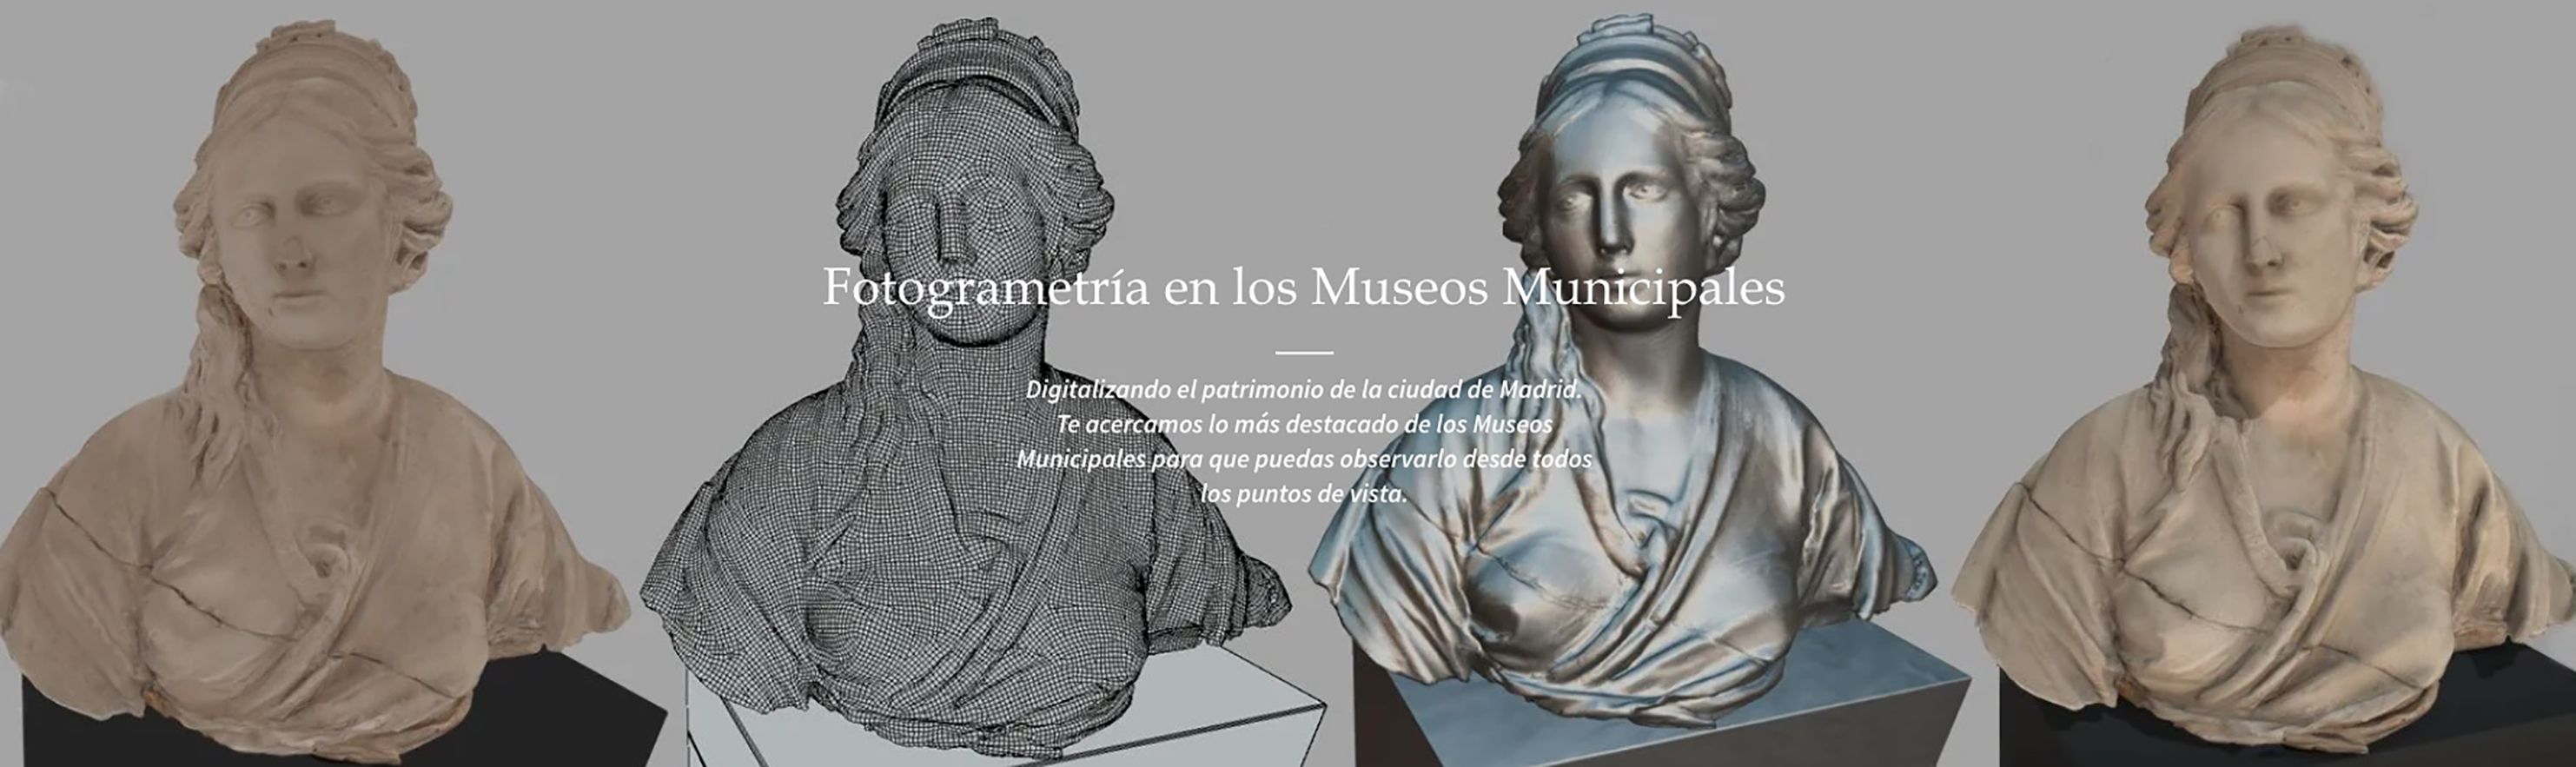 La Biblioteca Digital Memoria de Madrid acerca al público objetos de los museos y monumentos en 3D